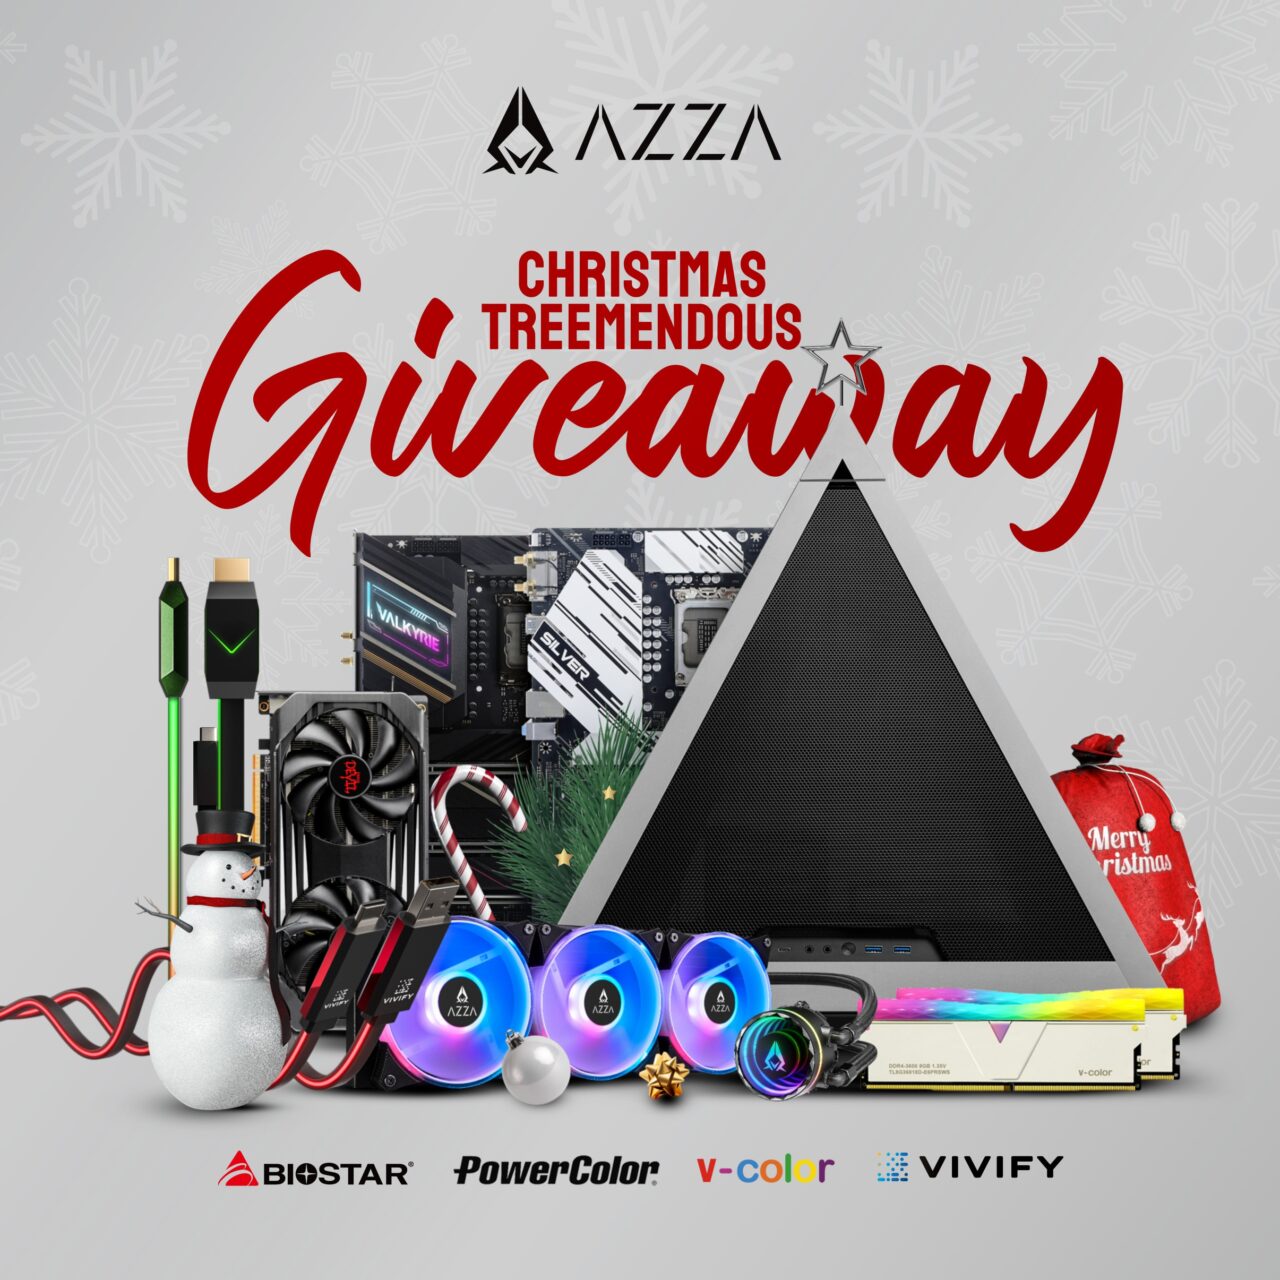 Win AZZA Christmas Treemendous Giveaway